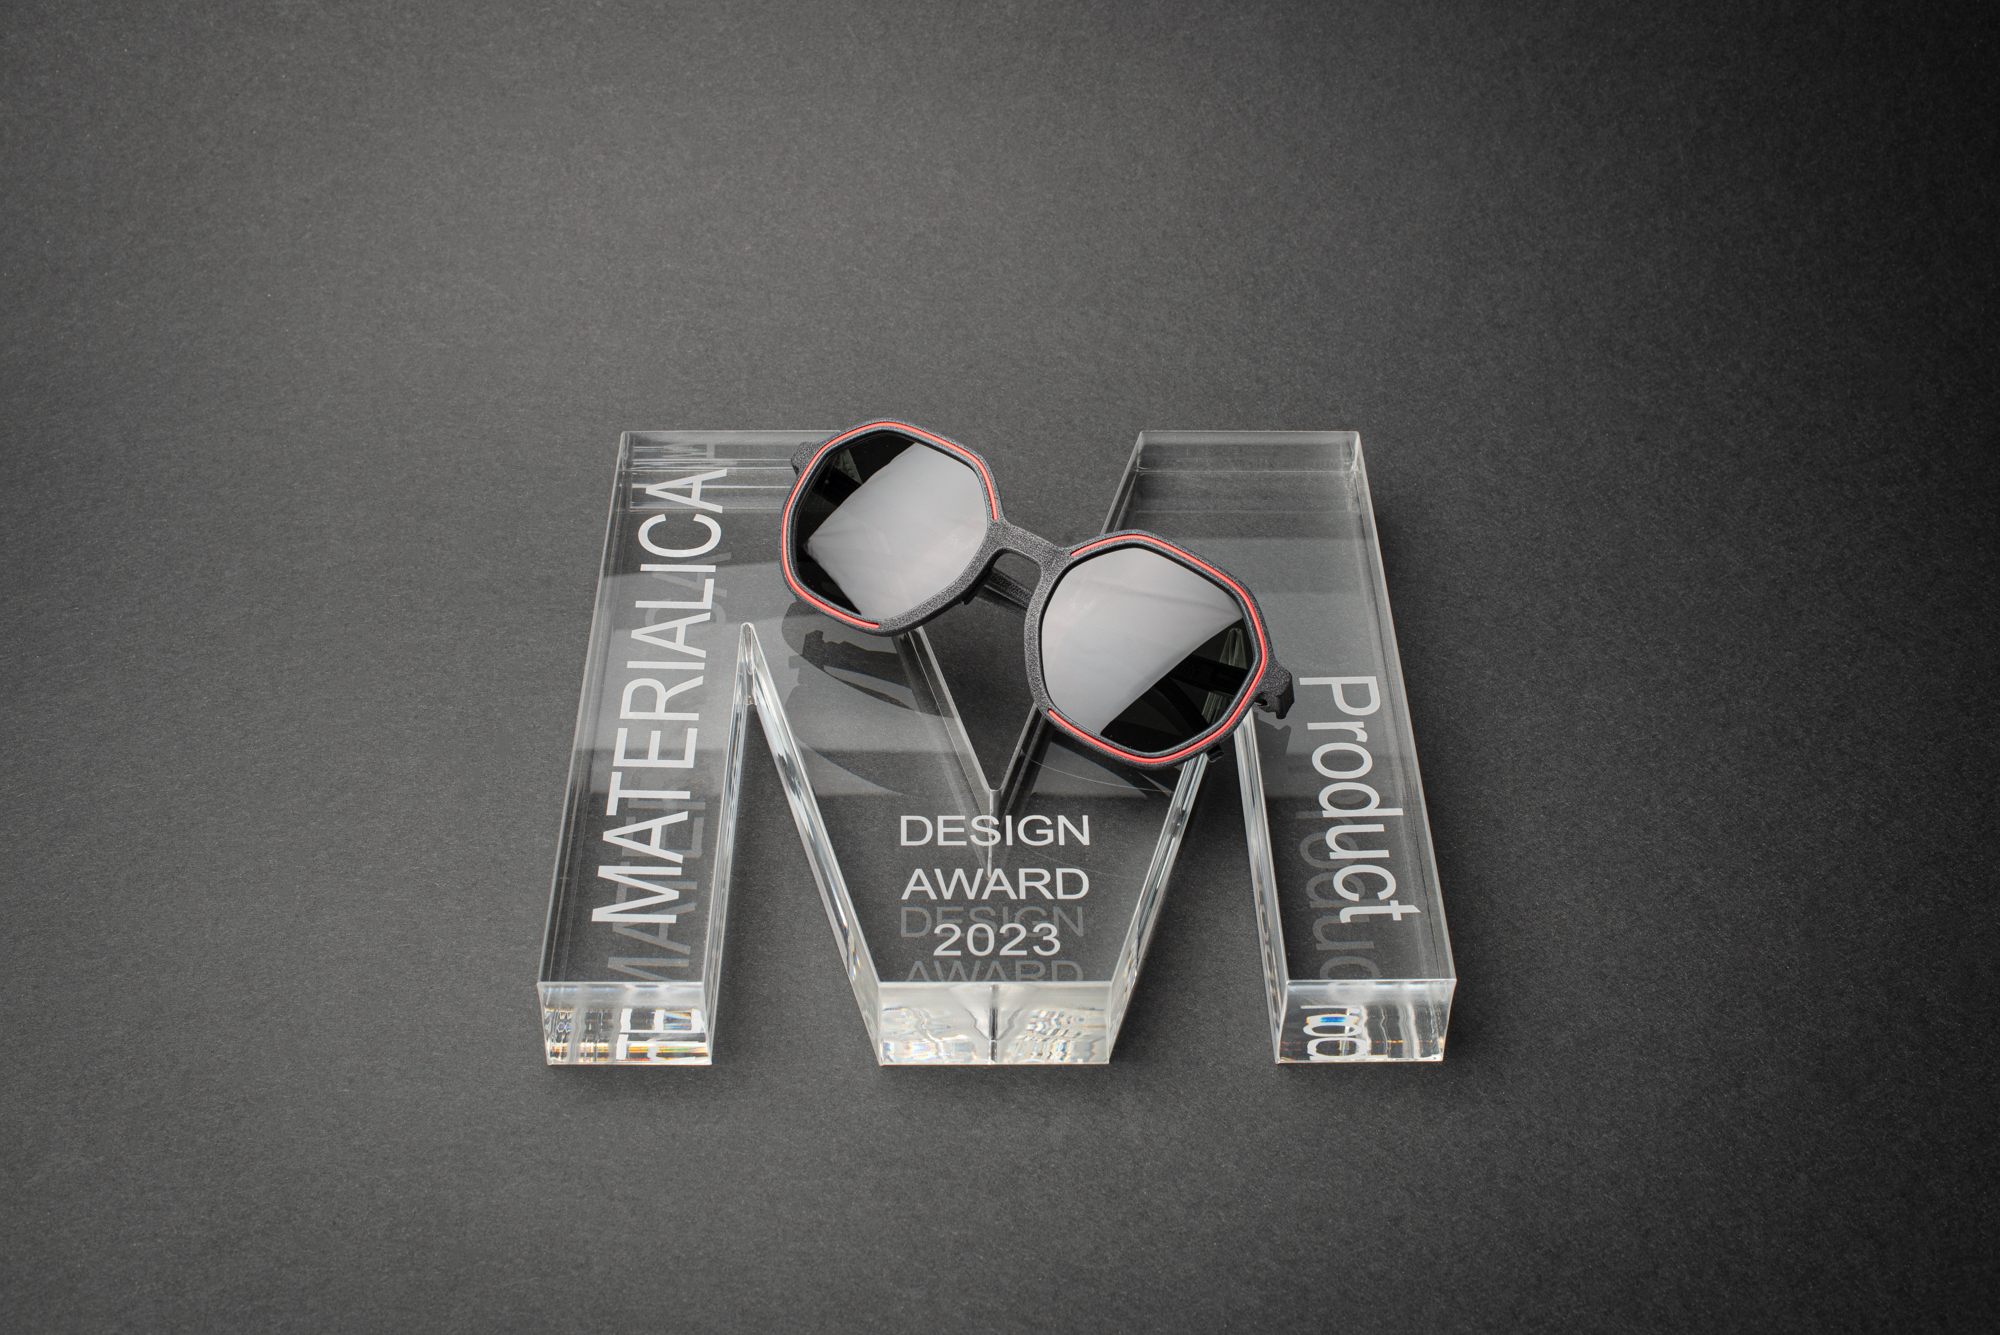 rolf beans glasses 3d printed blant based winner materialica award 1 rolf.